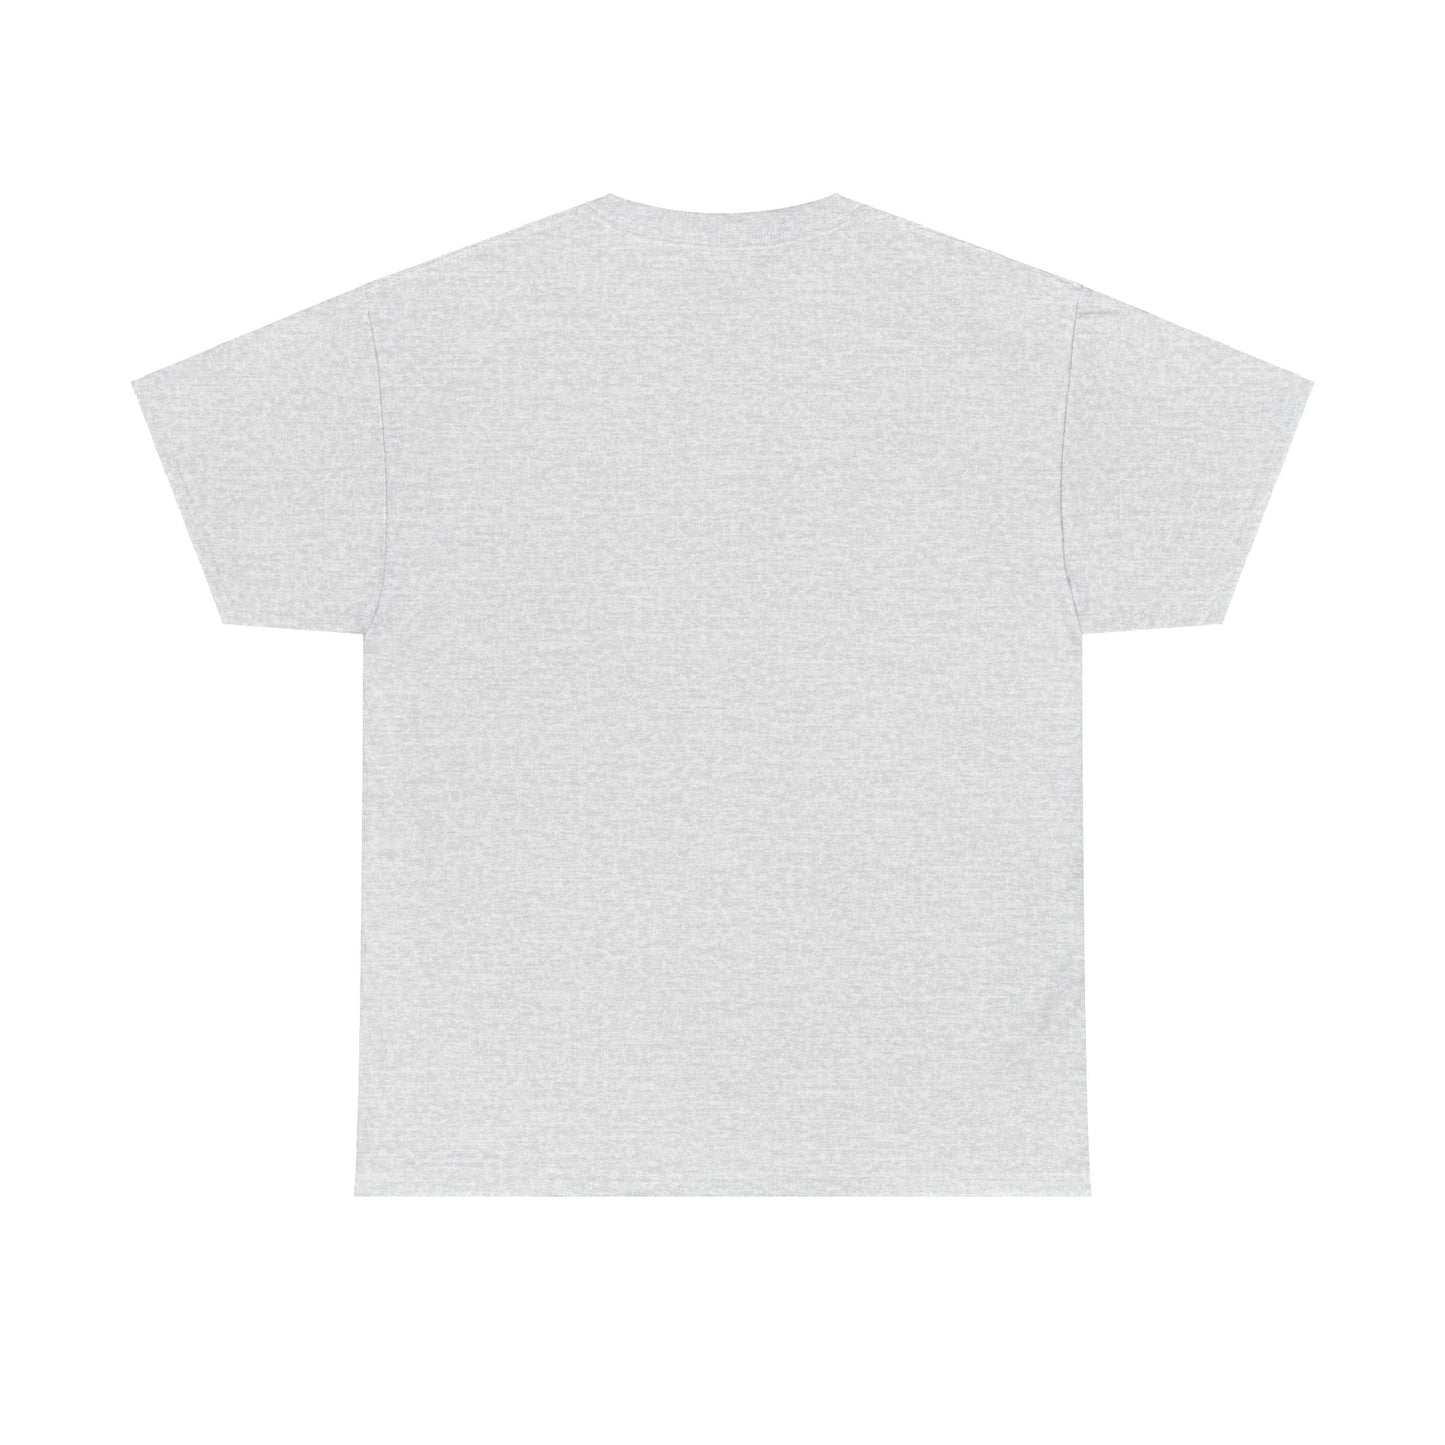 Thinner T-shirt